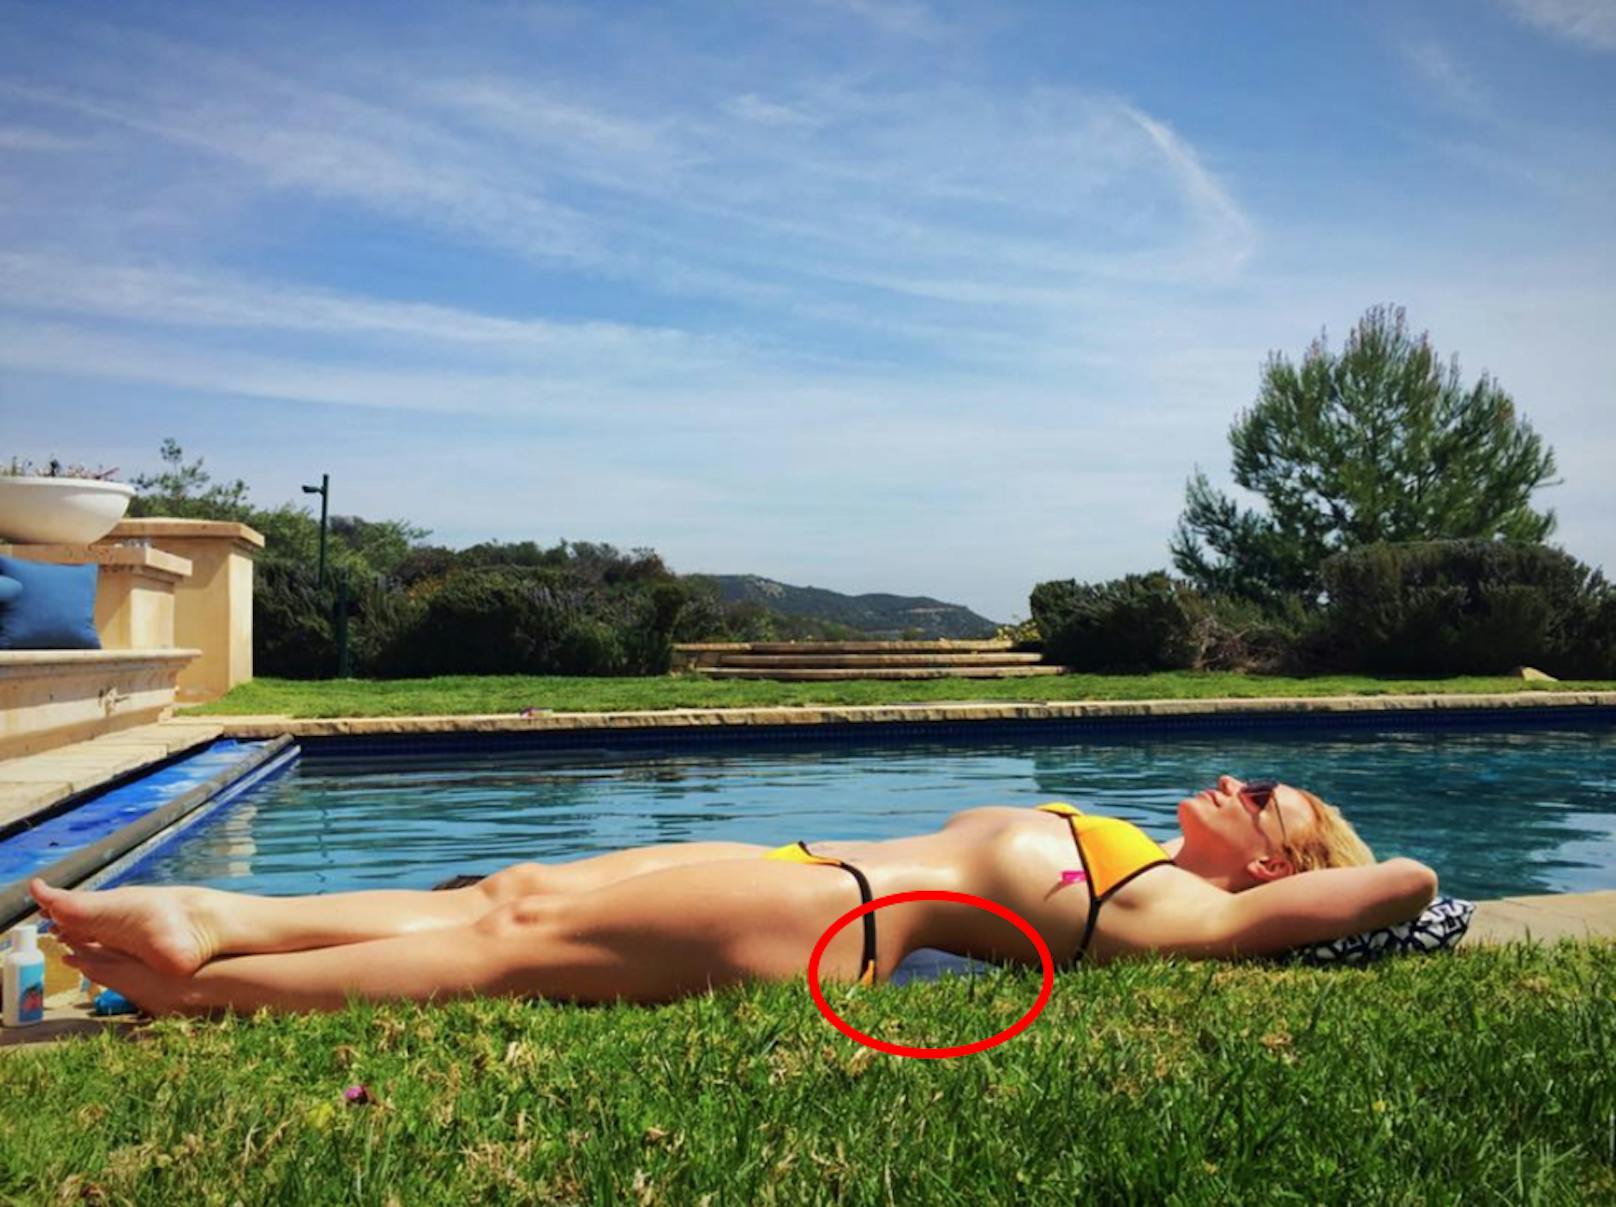 Britney Spears arbeitet hart an ihrem Körper, aber auch mit aller Anstrengung ist es nicht möglich, sich das Kreuz wegzutrainieren. Vor allem, wenn im entstandenen Hohlkreuz der Beton des Beckenrandes und nicht Wasser zu sehen sein sollte